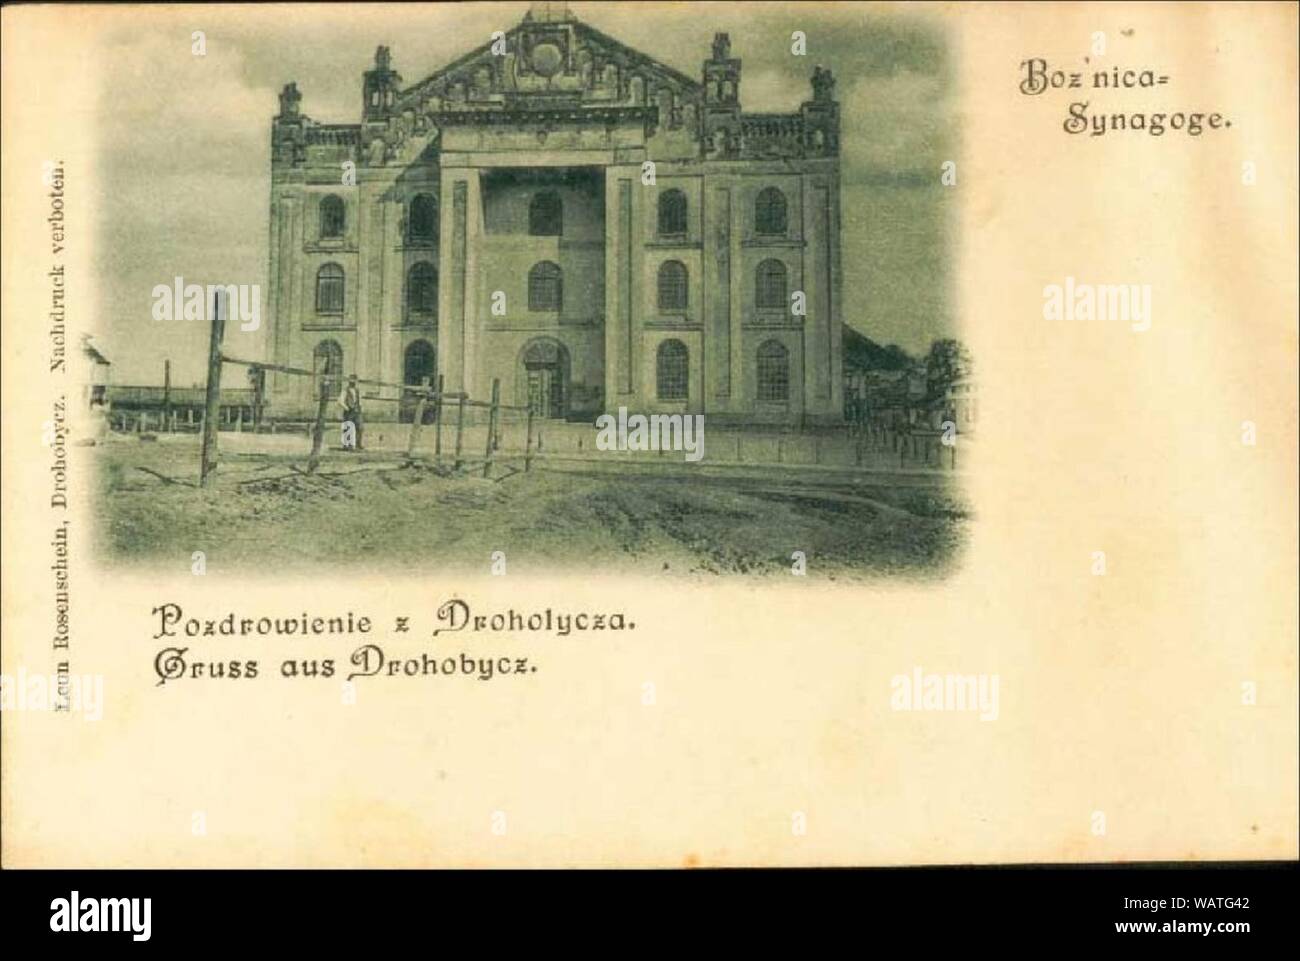 Drohobycz,Wielka synagoga. Stock Photo